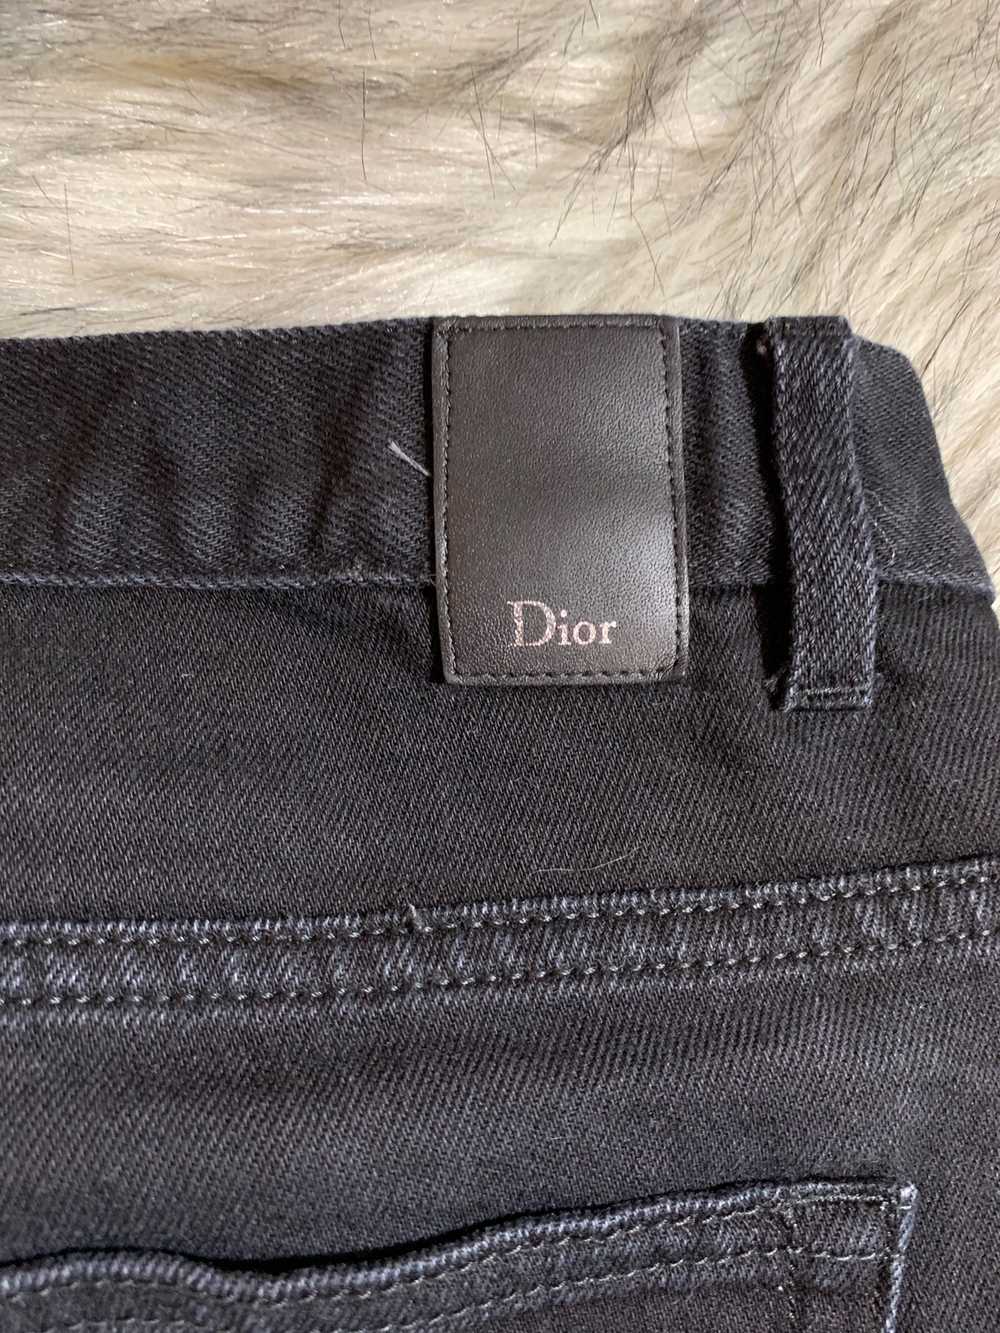 Dior × Kris Van Assche MII FIVE POCKET BLACK DENIM - image 6